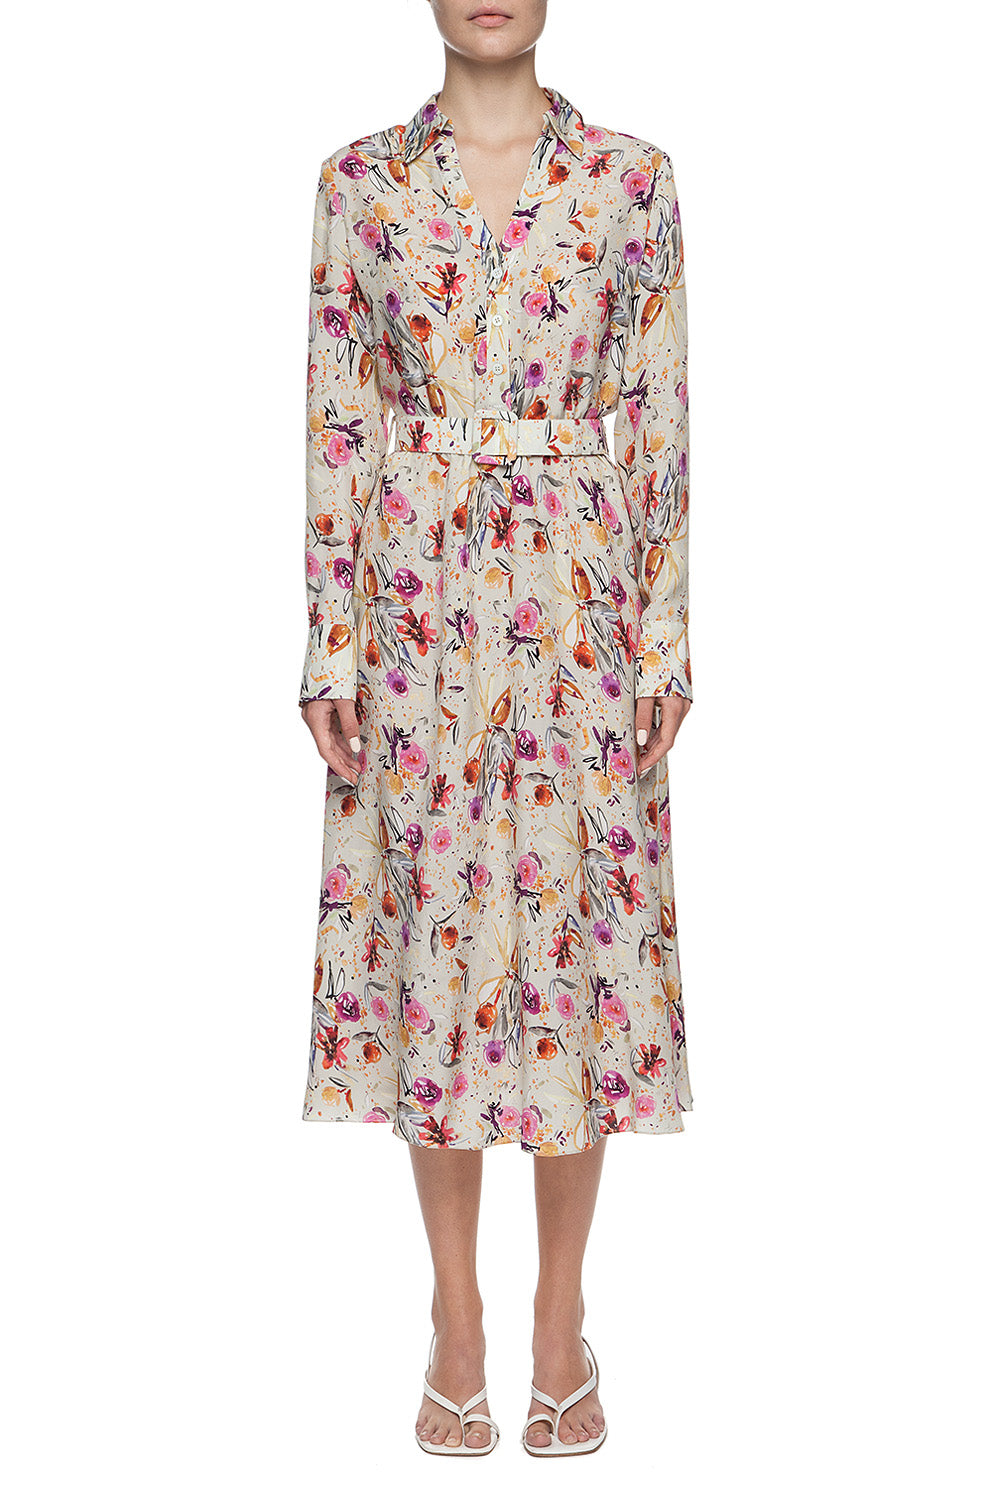 Pistachio floral printed dress